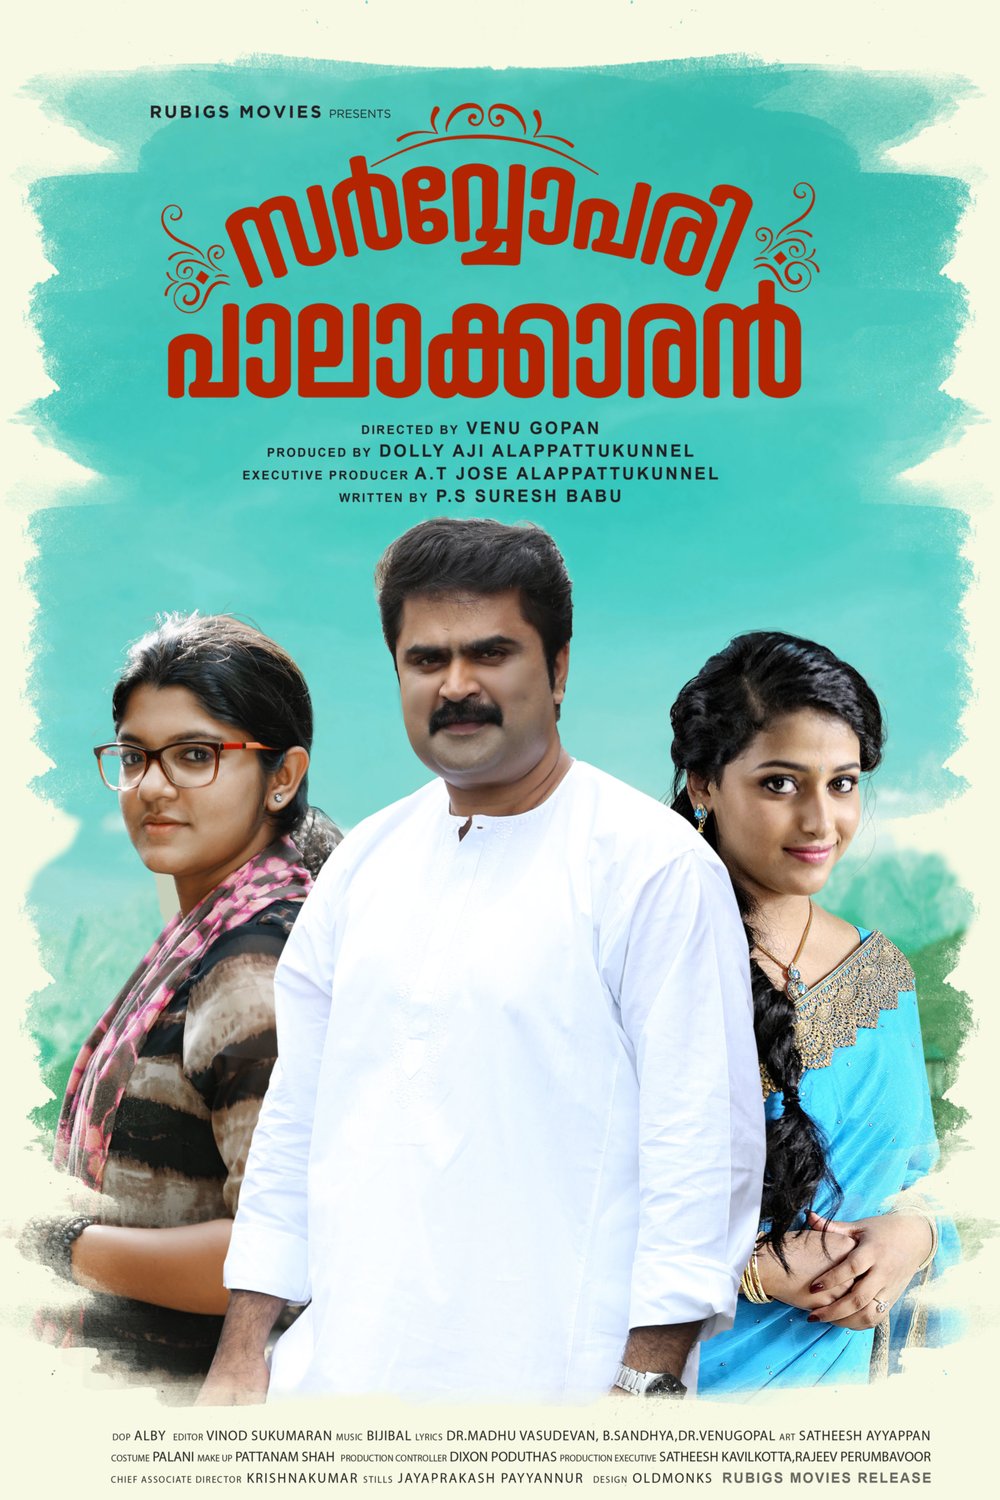 Malayalam poster of the movie Sarvopari Palakkaran